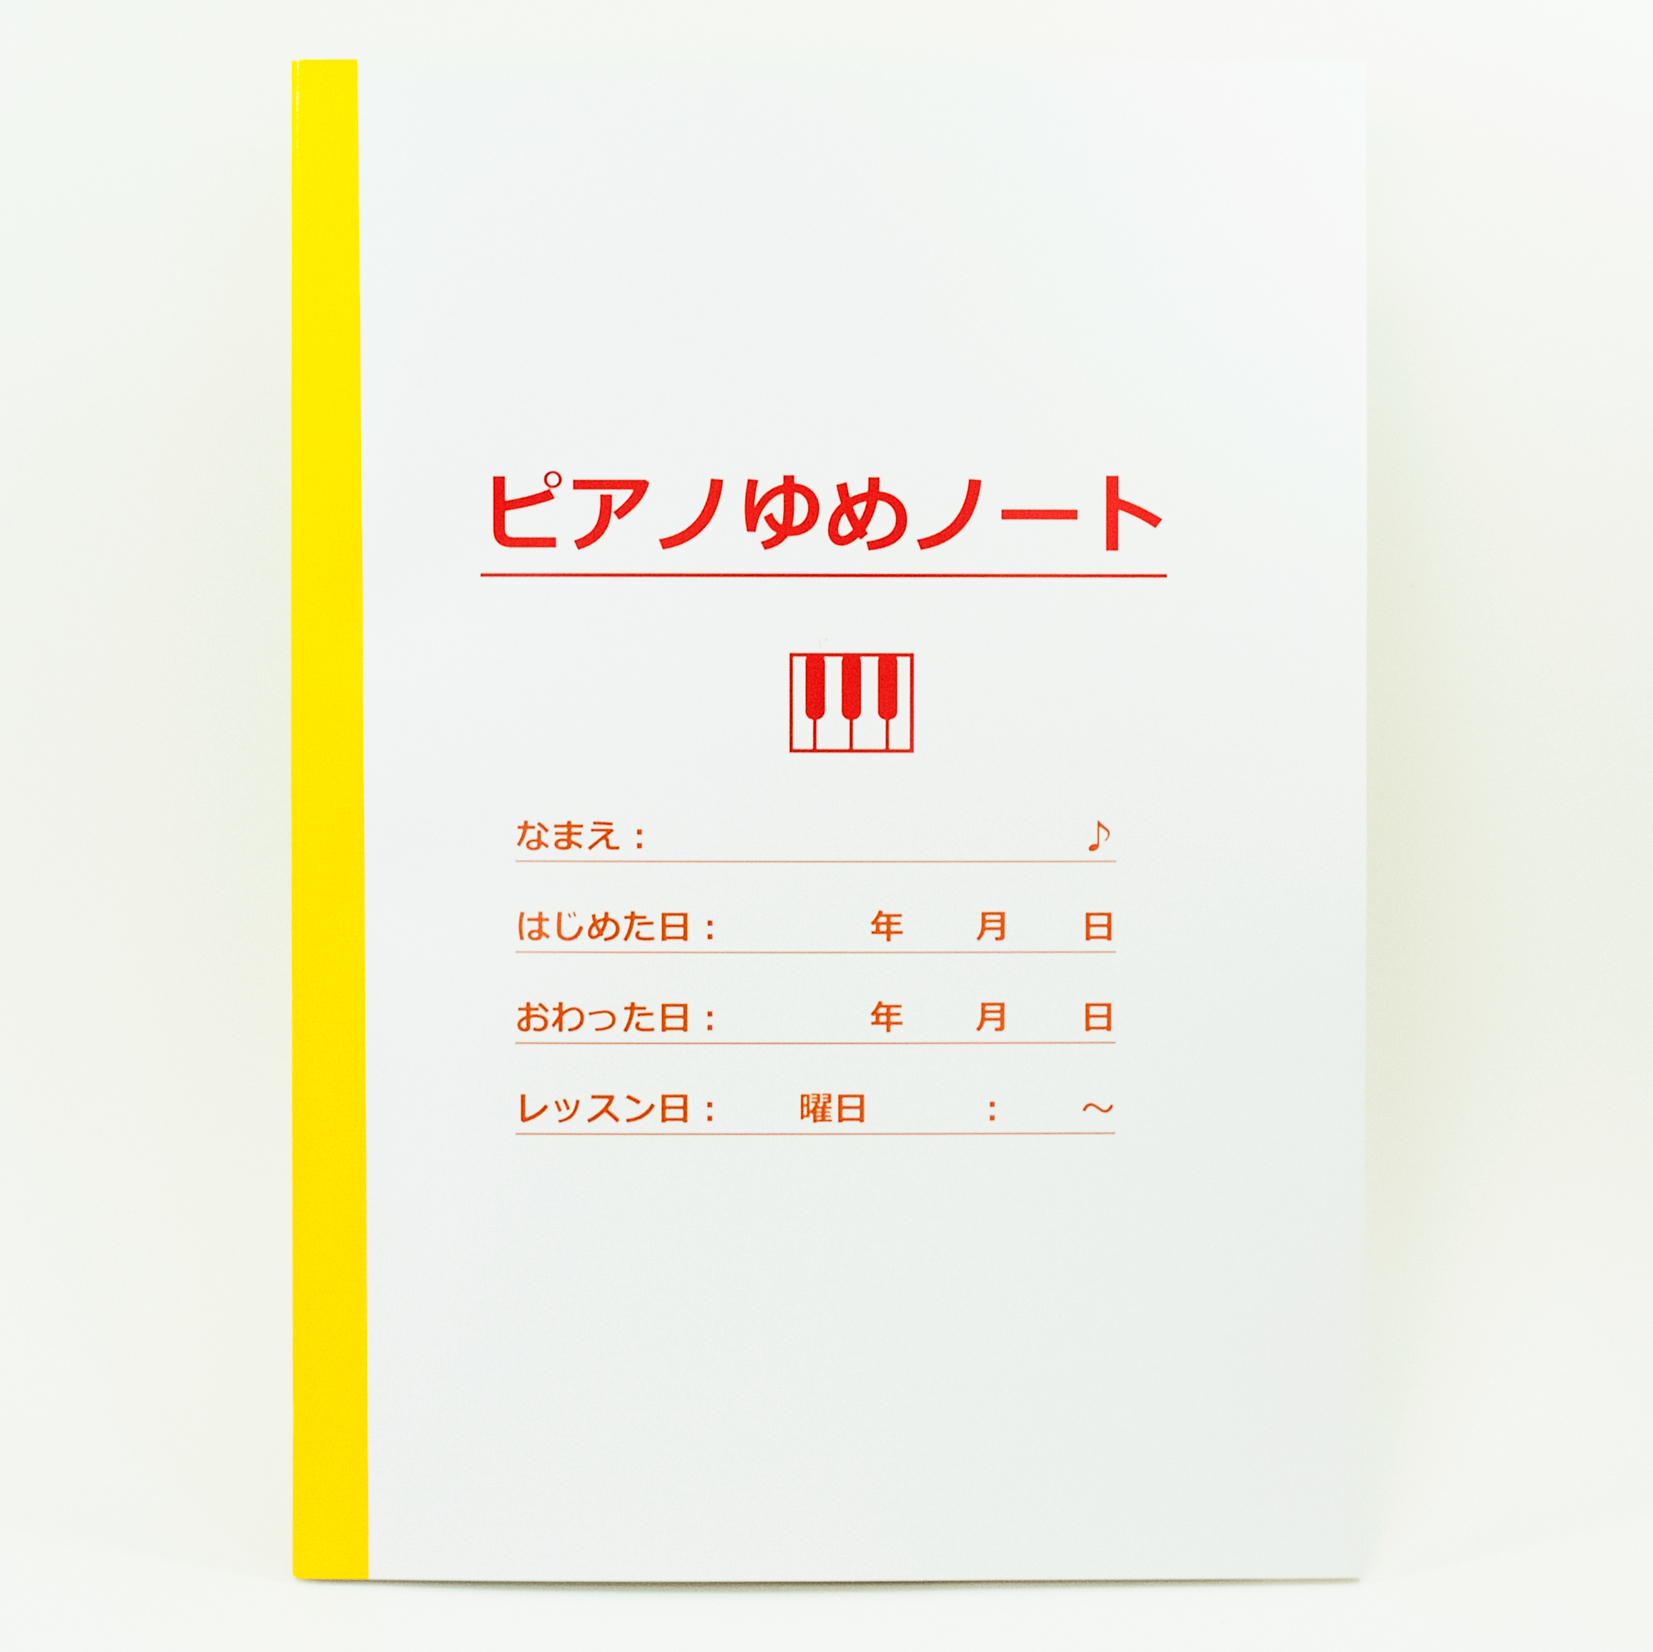 「加藤彰子ピアノリトミック教室 様」製作のオリジナルノート